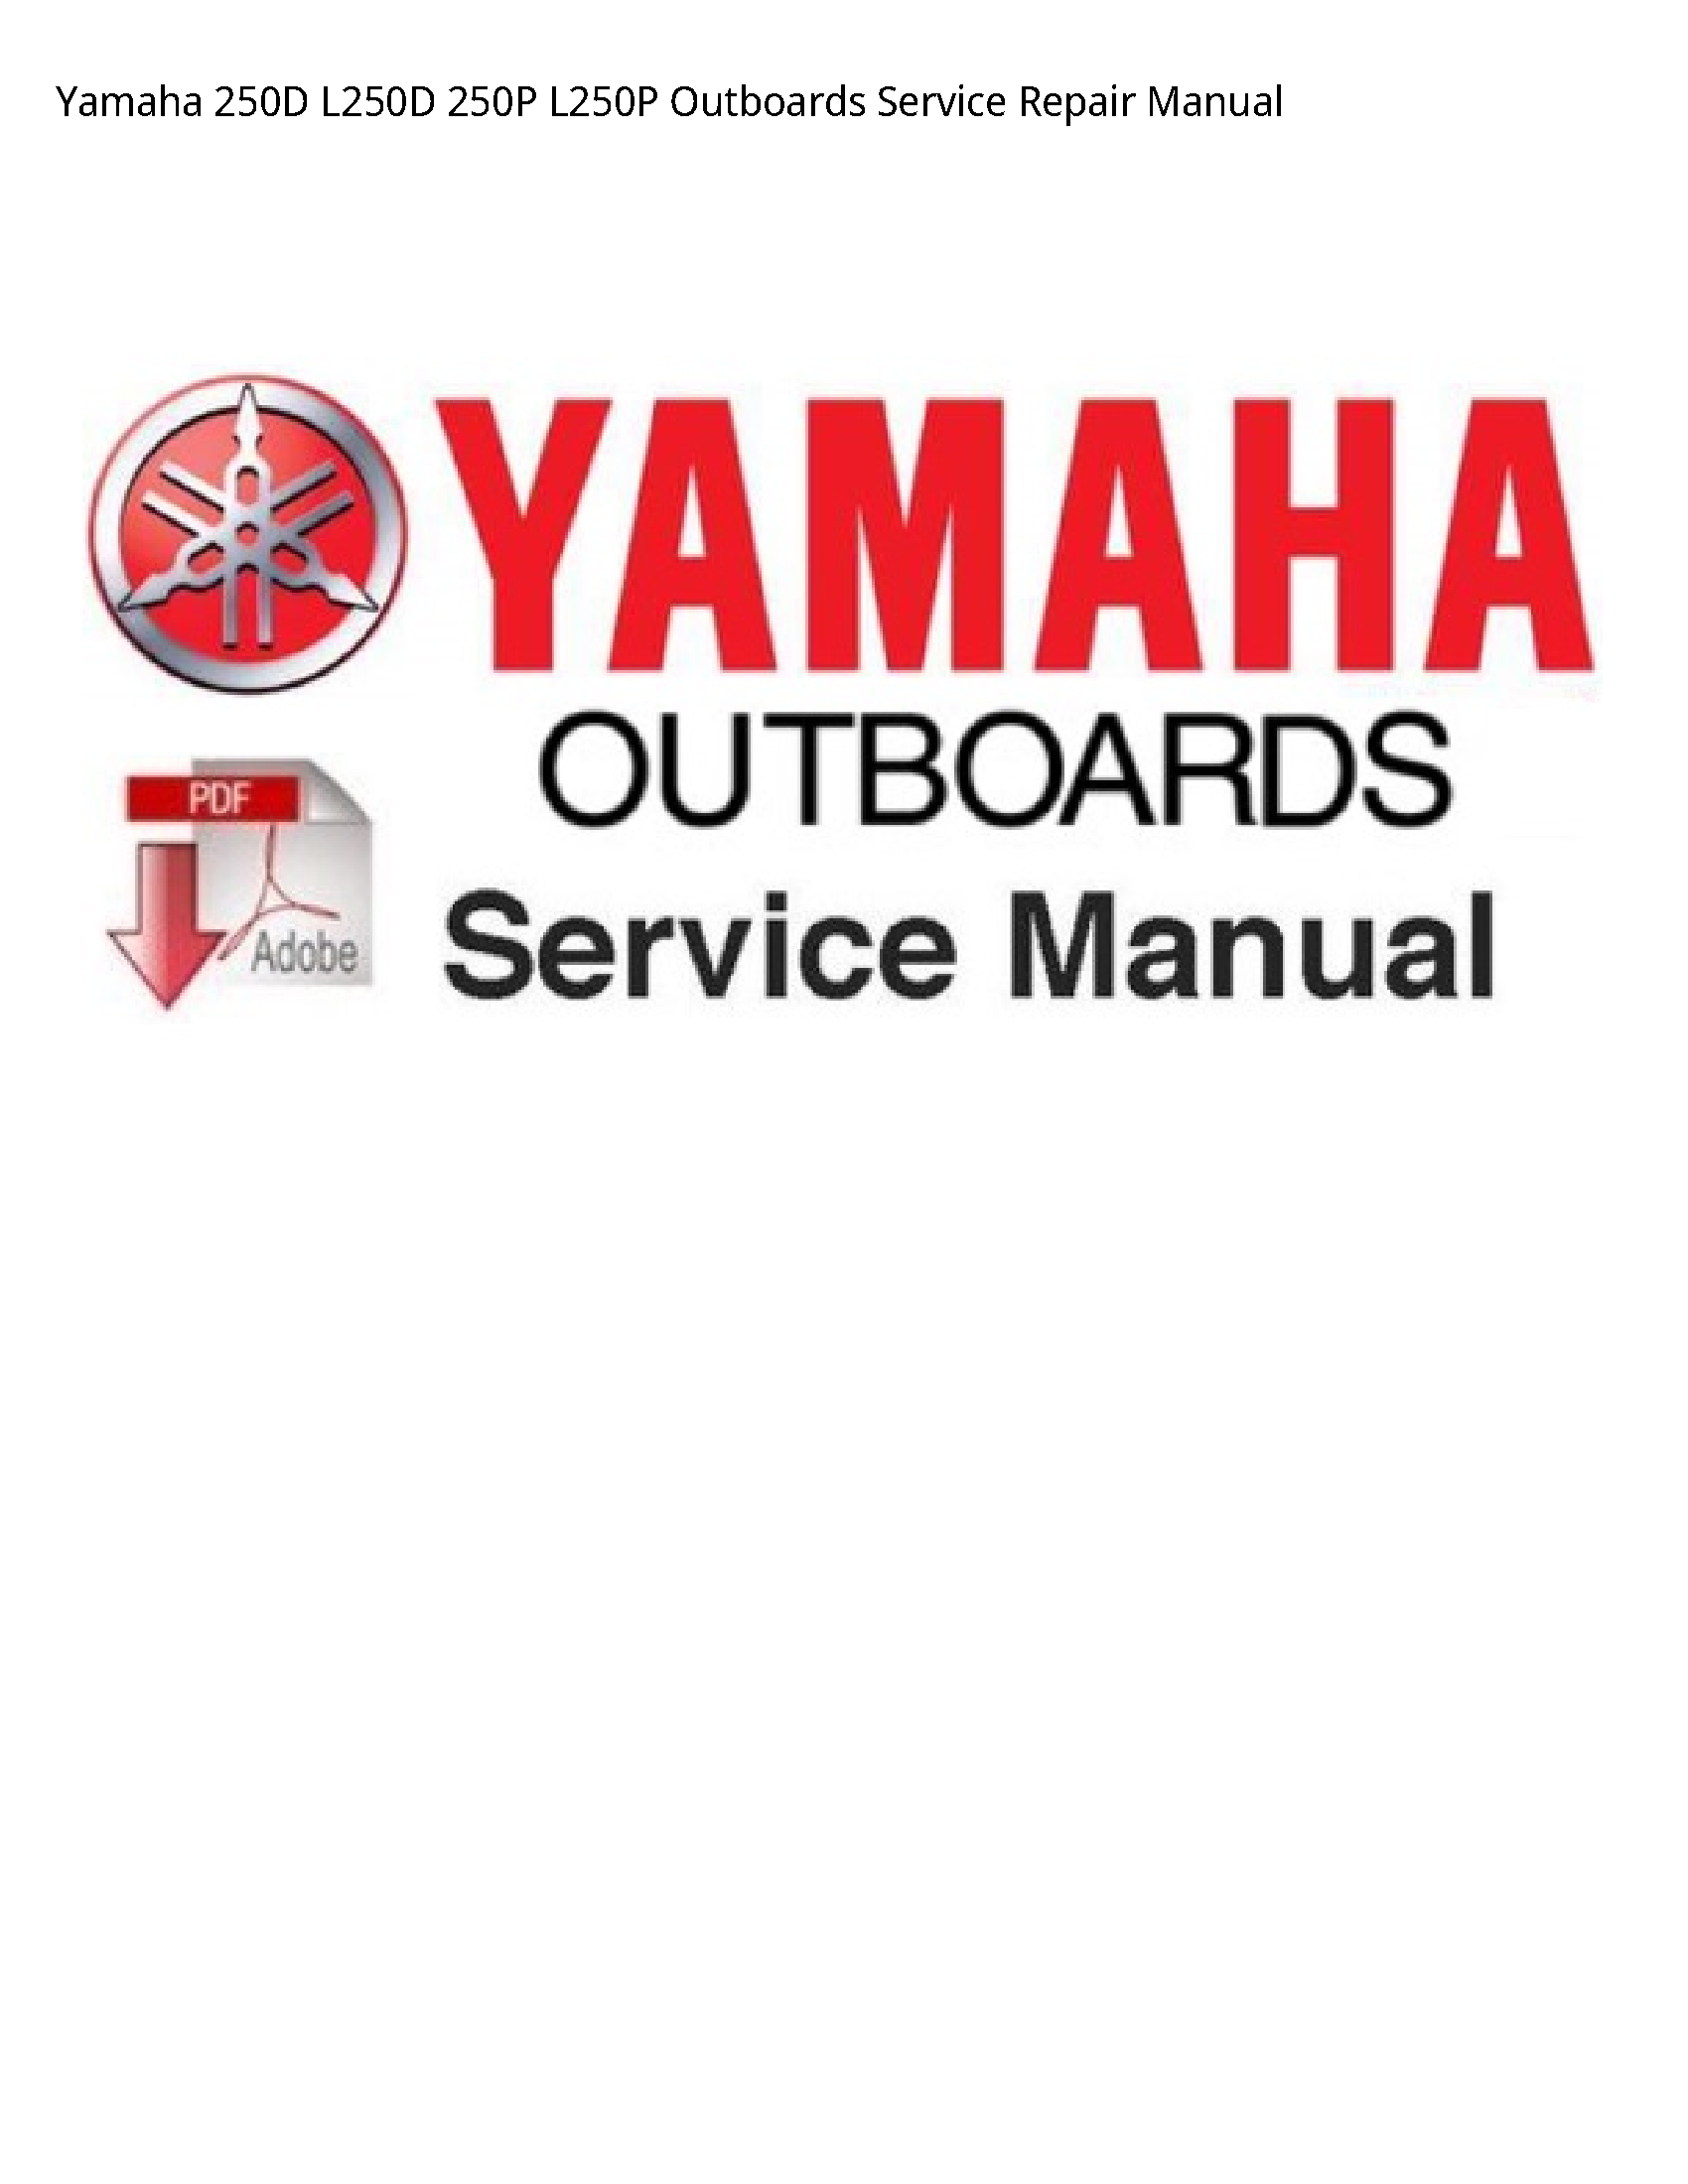 Yamaha 250D Outboards manual